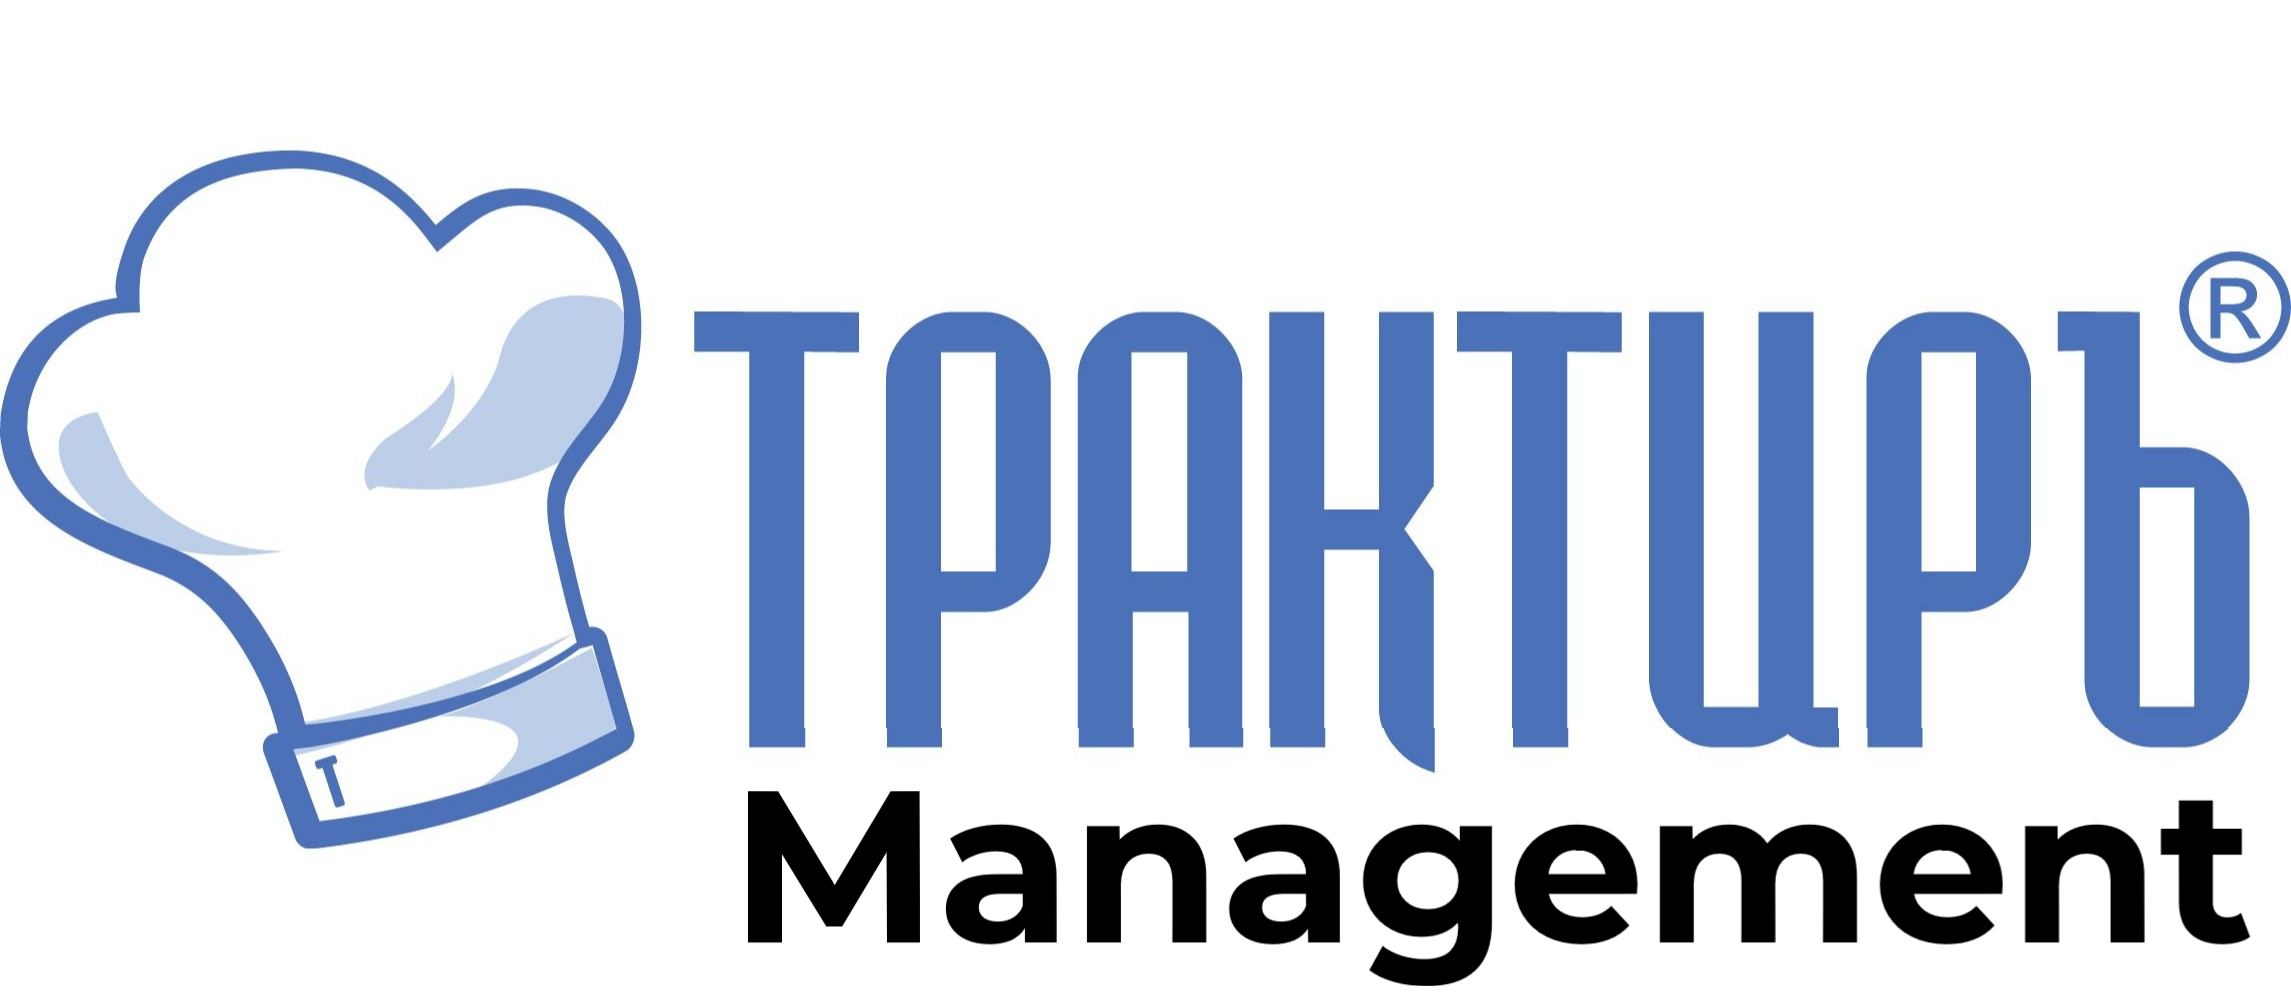 Трактиръ: Management в Перми